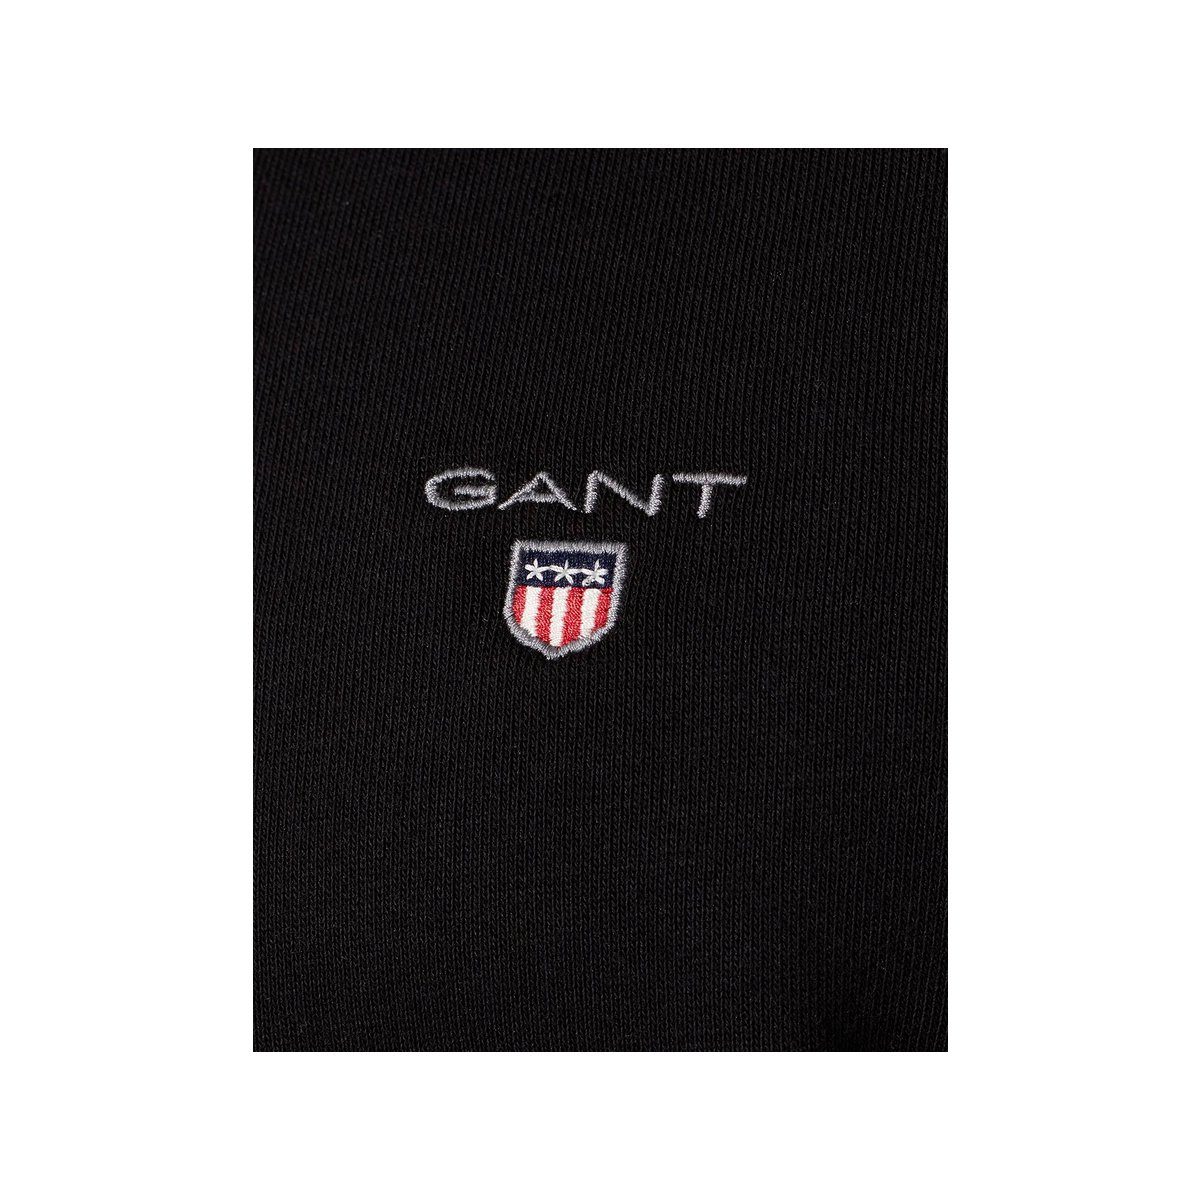 Gant Sweatjacke schwarz passform textil (1-tlg)